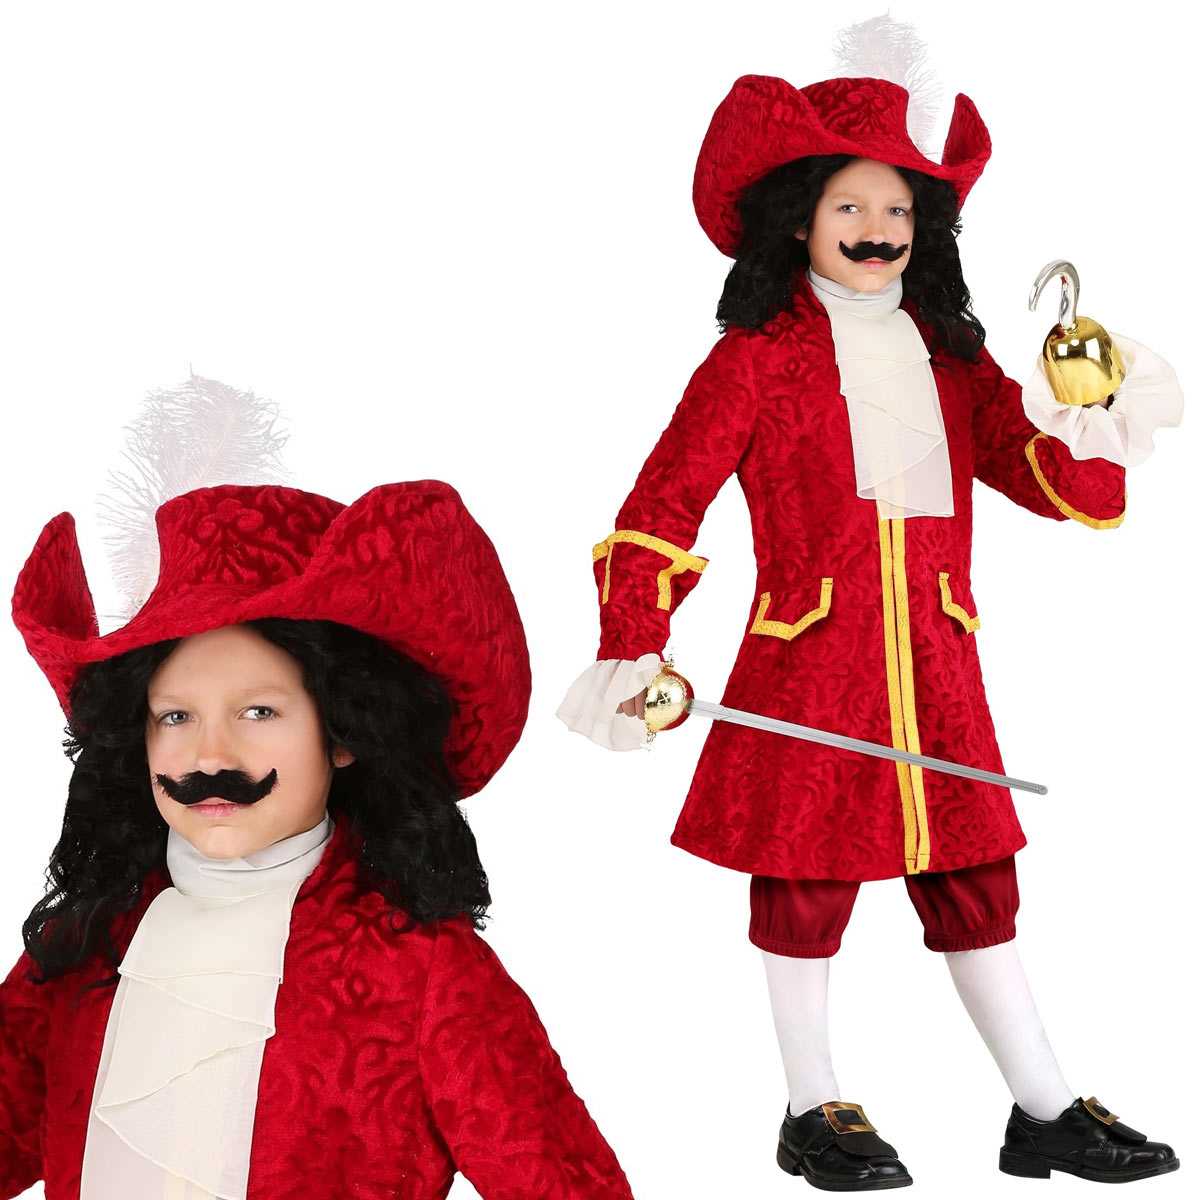 ピーターパン フック船長 衣装 子供 海賊 コスチューム コスプレ ハロウィン Captain Hook Peter Pan